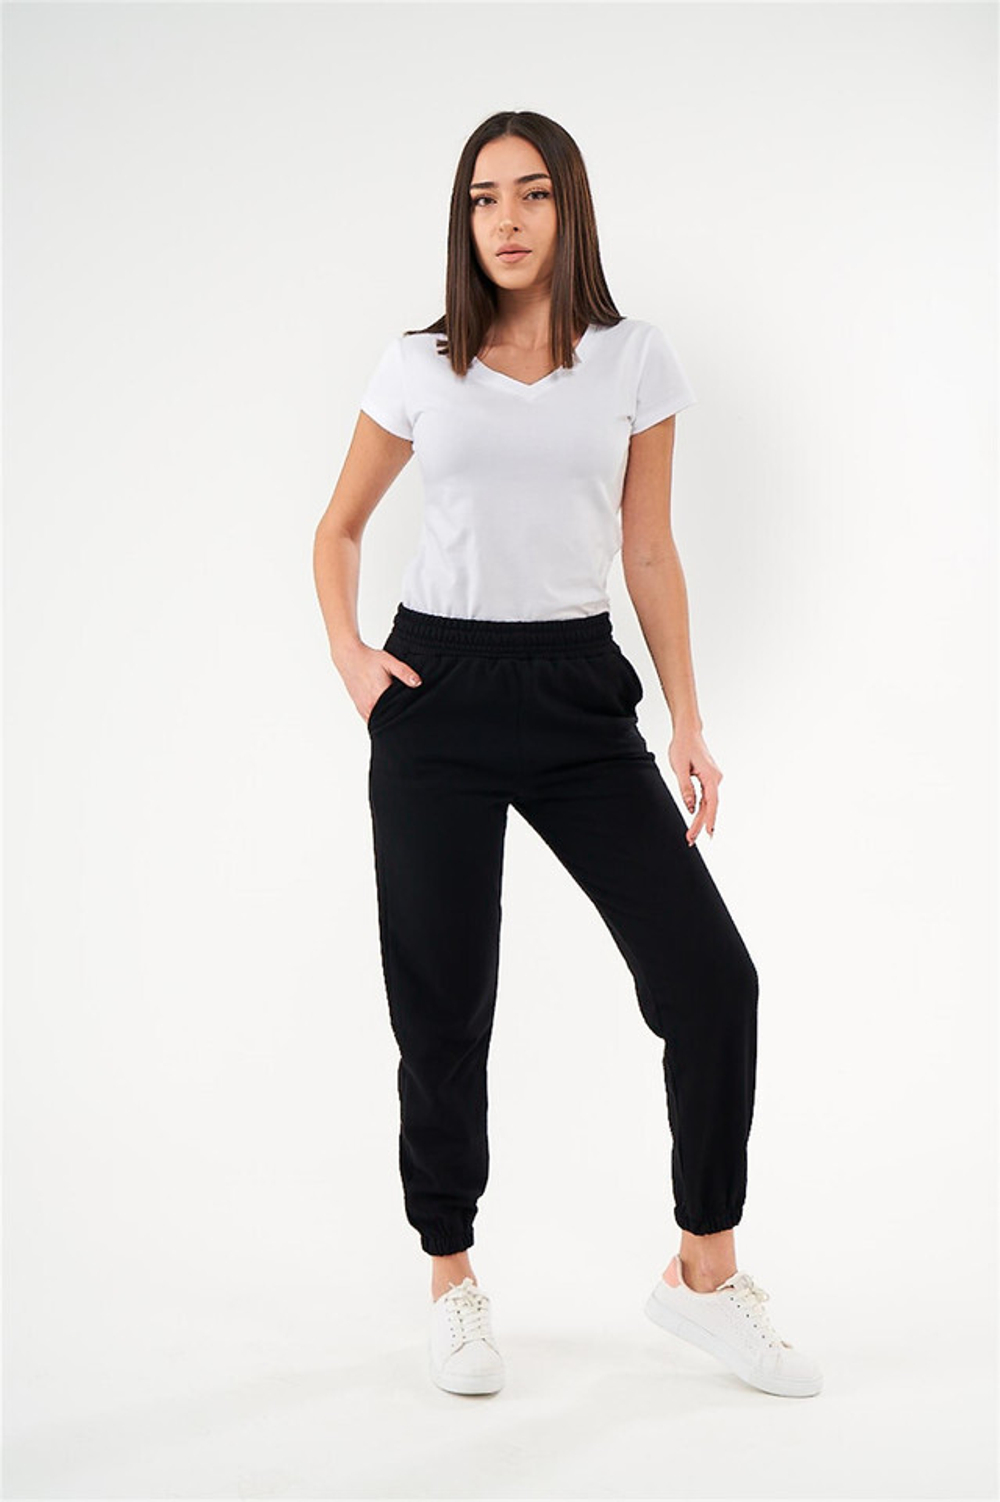 RELAX MODE / Брюки женские штаны спортивные джоггеры базовые повседневные - 40078